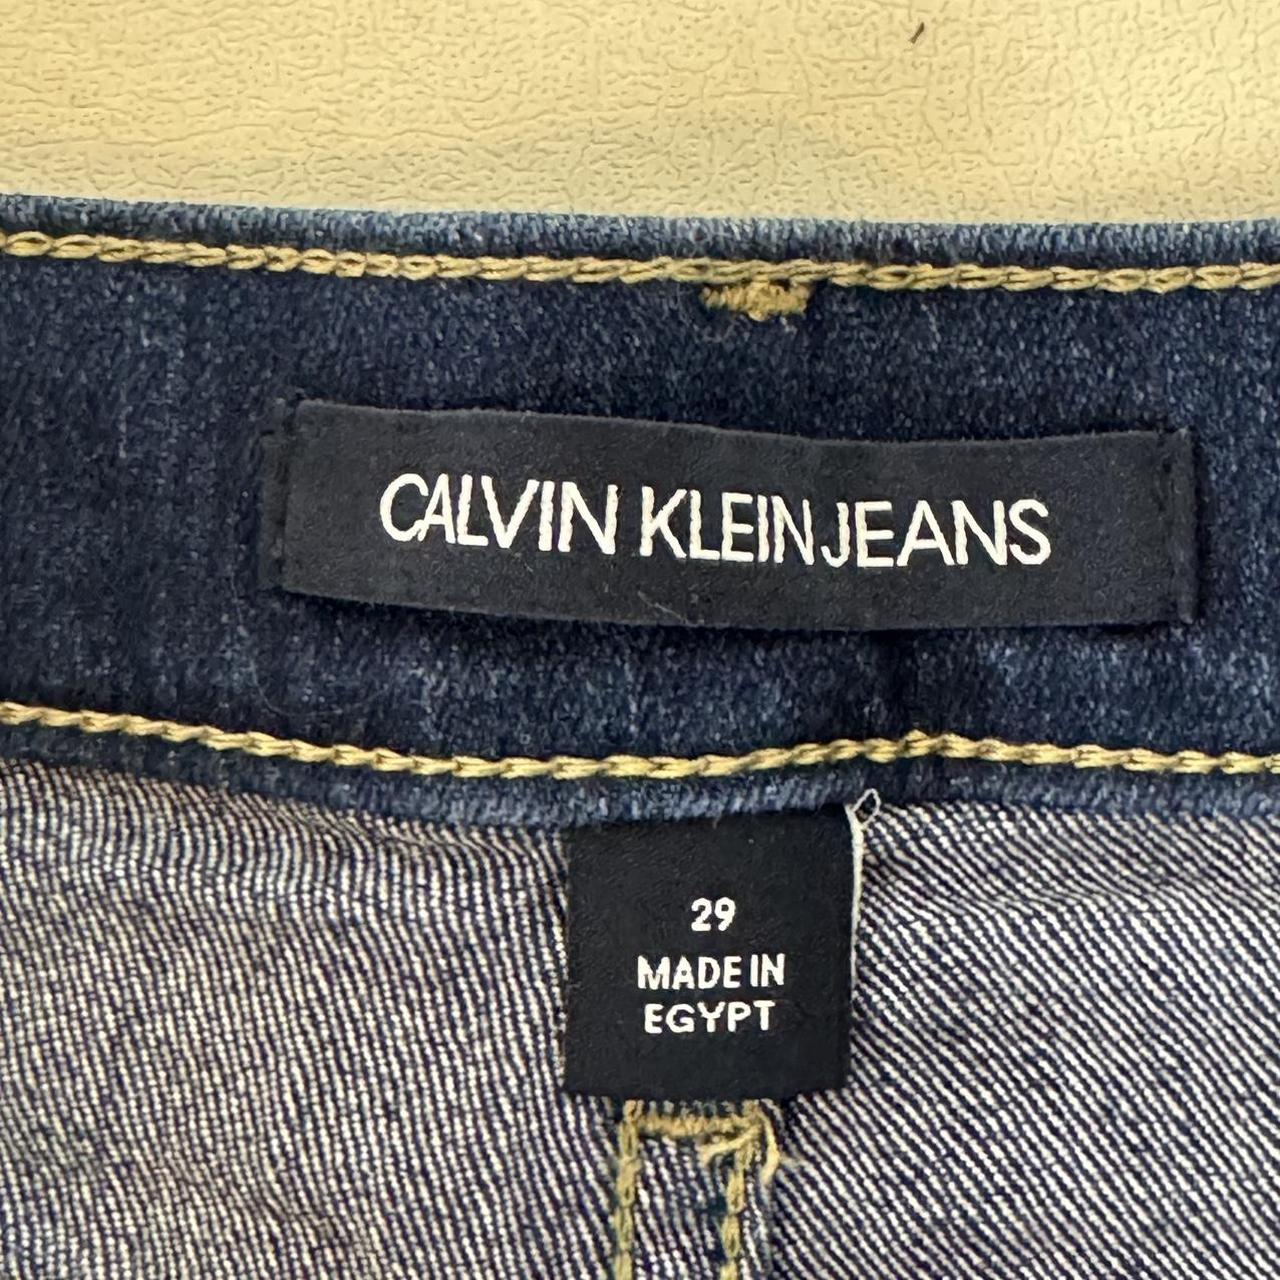 Calvin Klein Jean shorts -4in inseam #jeanshorts... - Depop